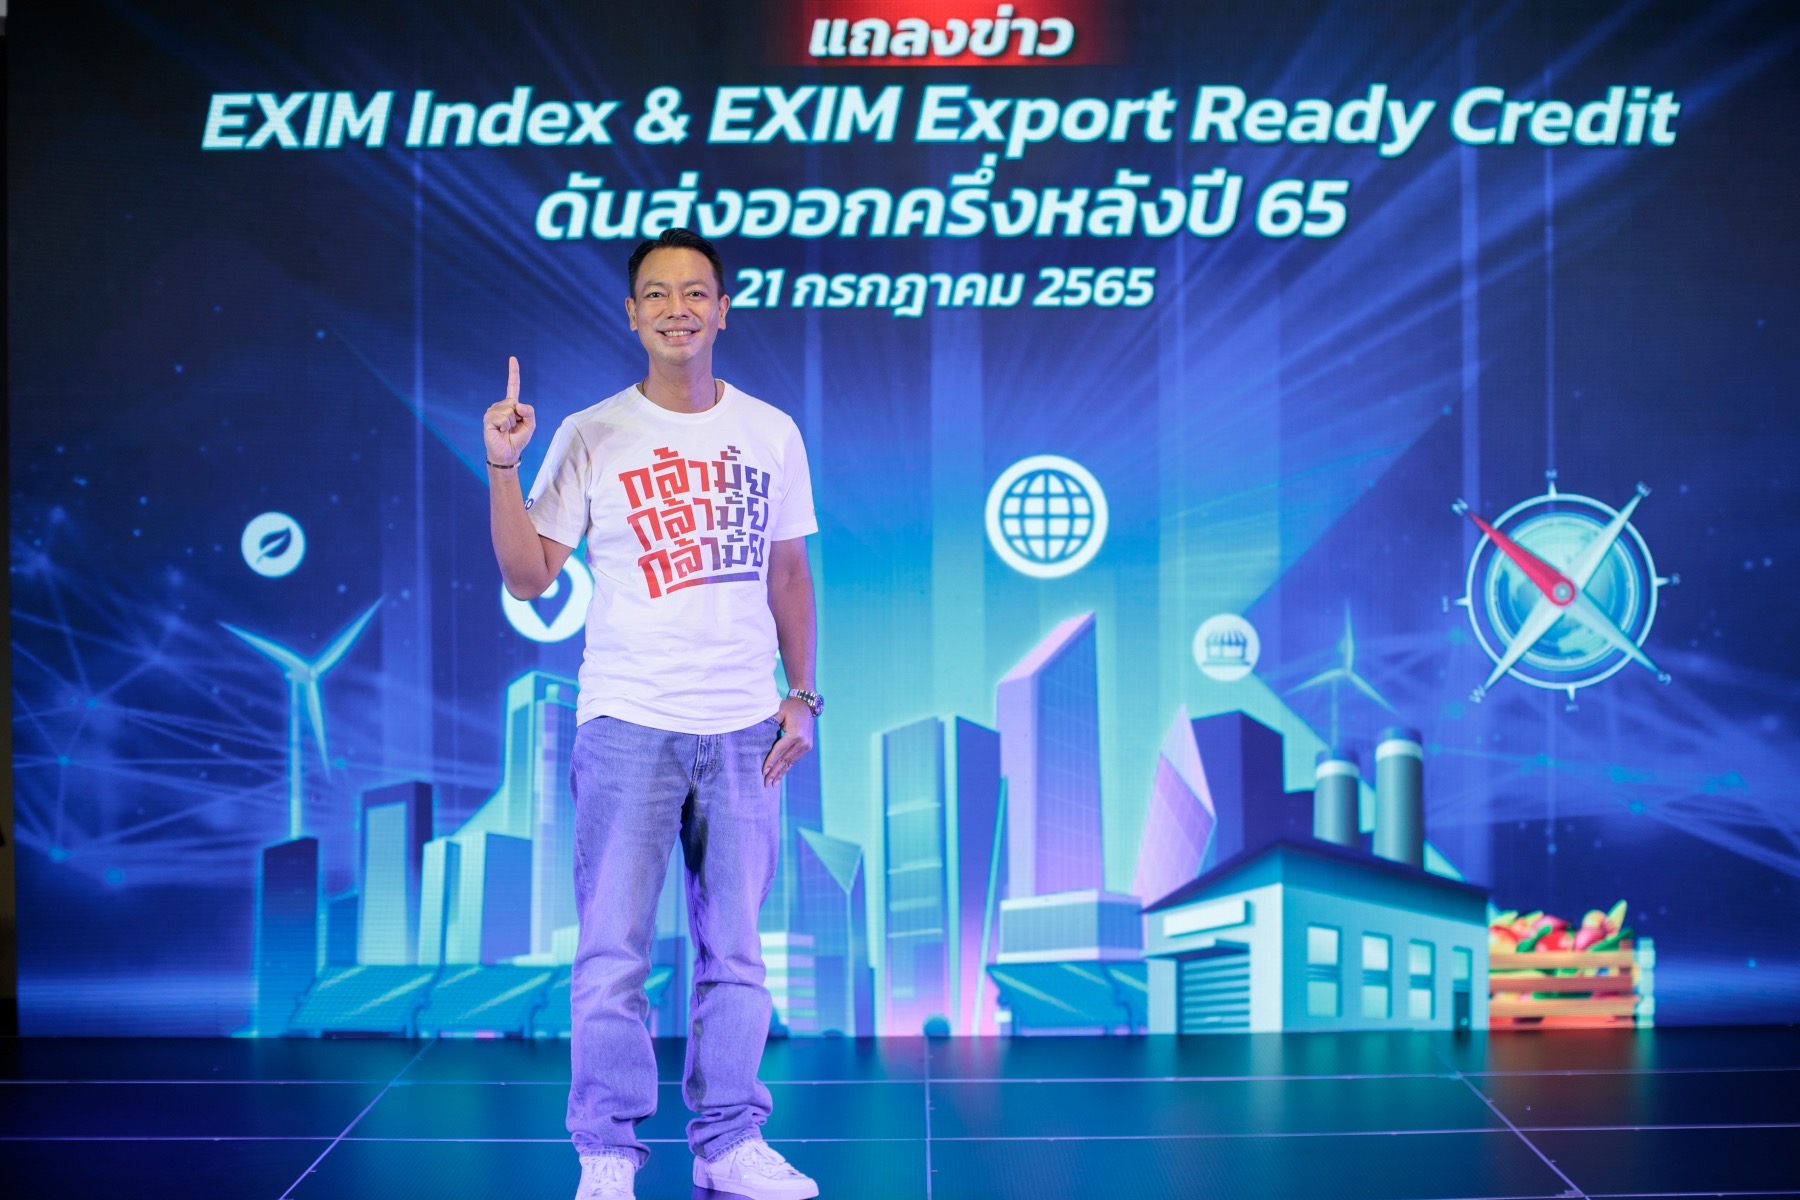 EXIM BANK แถลงข่าวเปิดตัว “EXIM Index” และ “EXIM Export Ready Credit” ดันส่งออกครึ่งหลังปี 65 หลังโชว์ฟอร์มปิดเป้าสินเชื่อปี 65 ภายใน 7 เดือนแรก